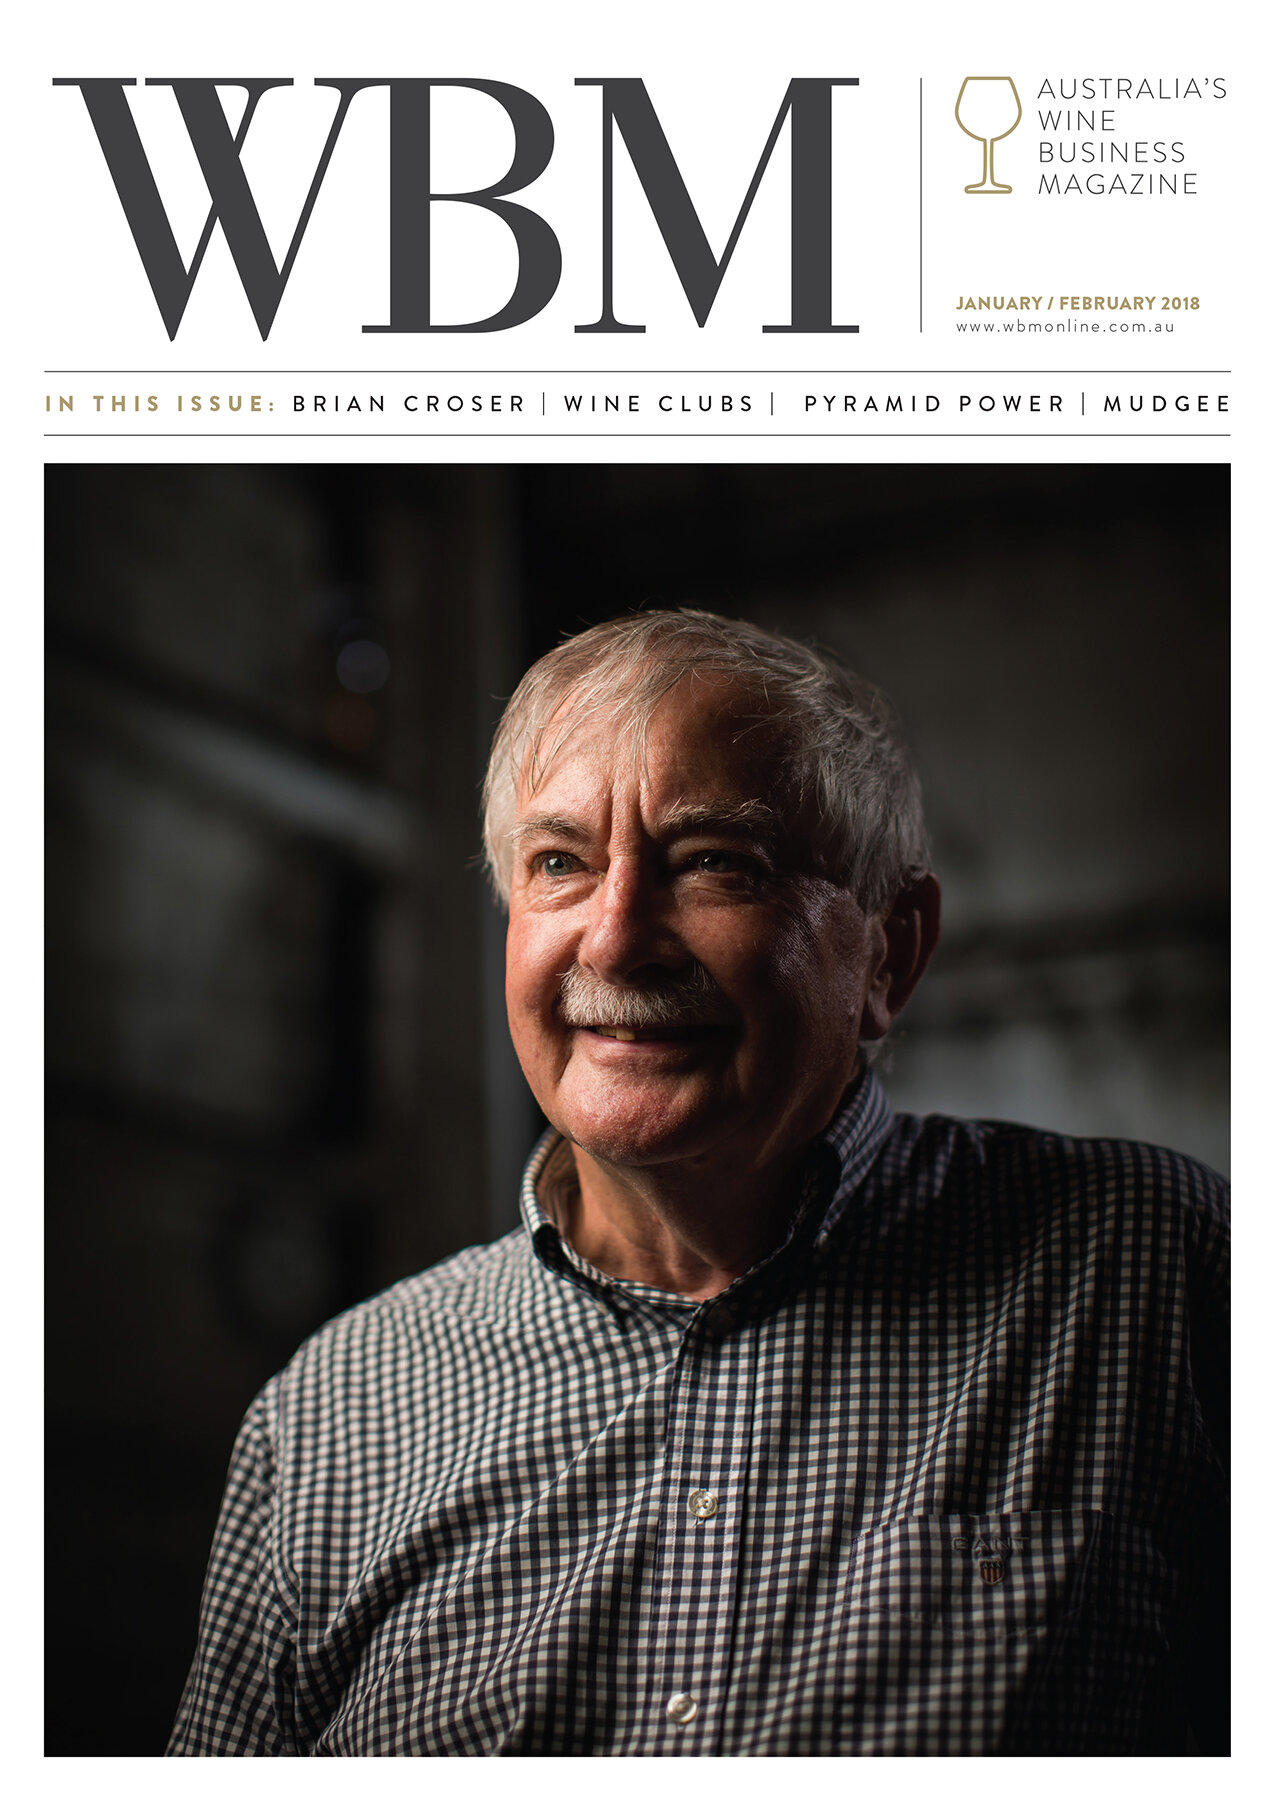 WBM 1801 January February 2018 cover.jpg